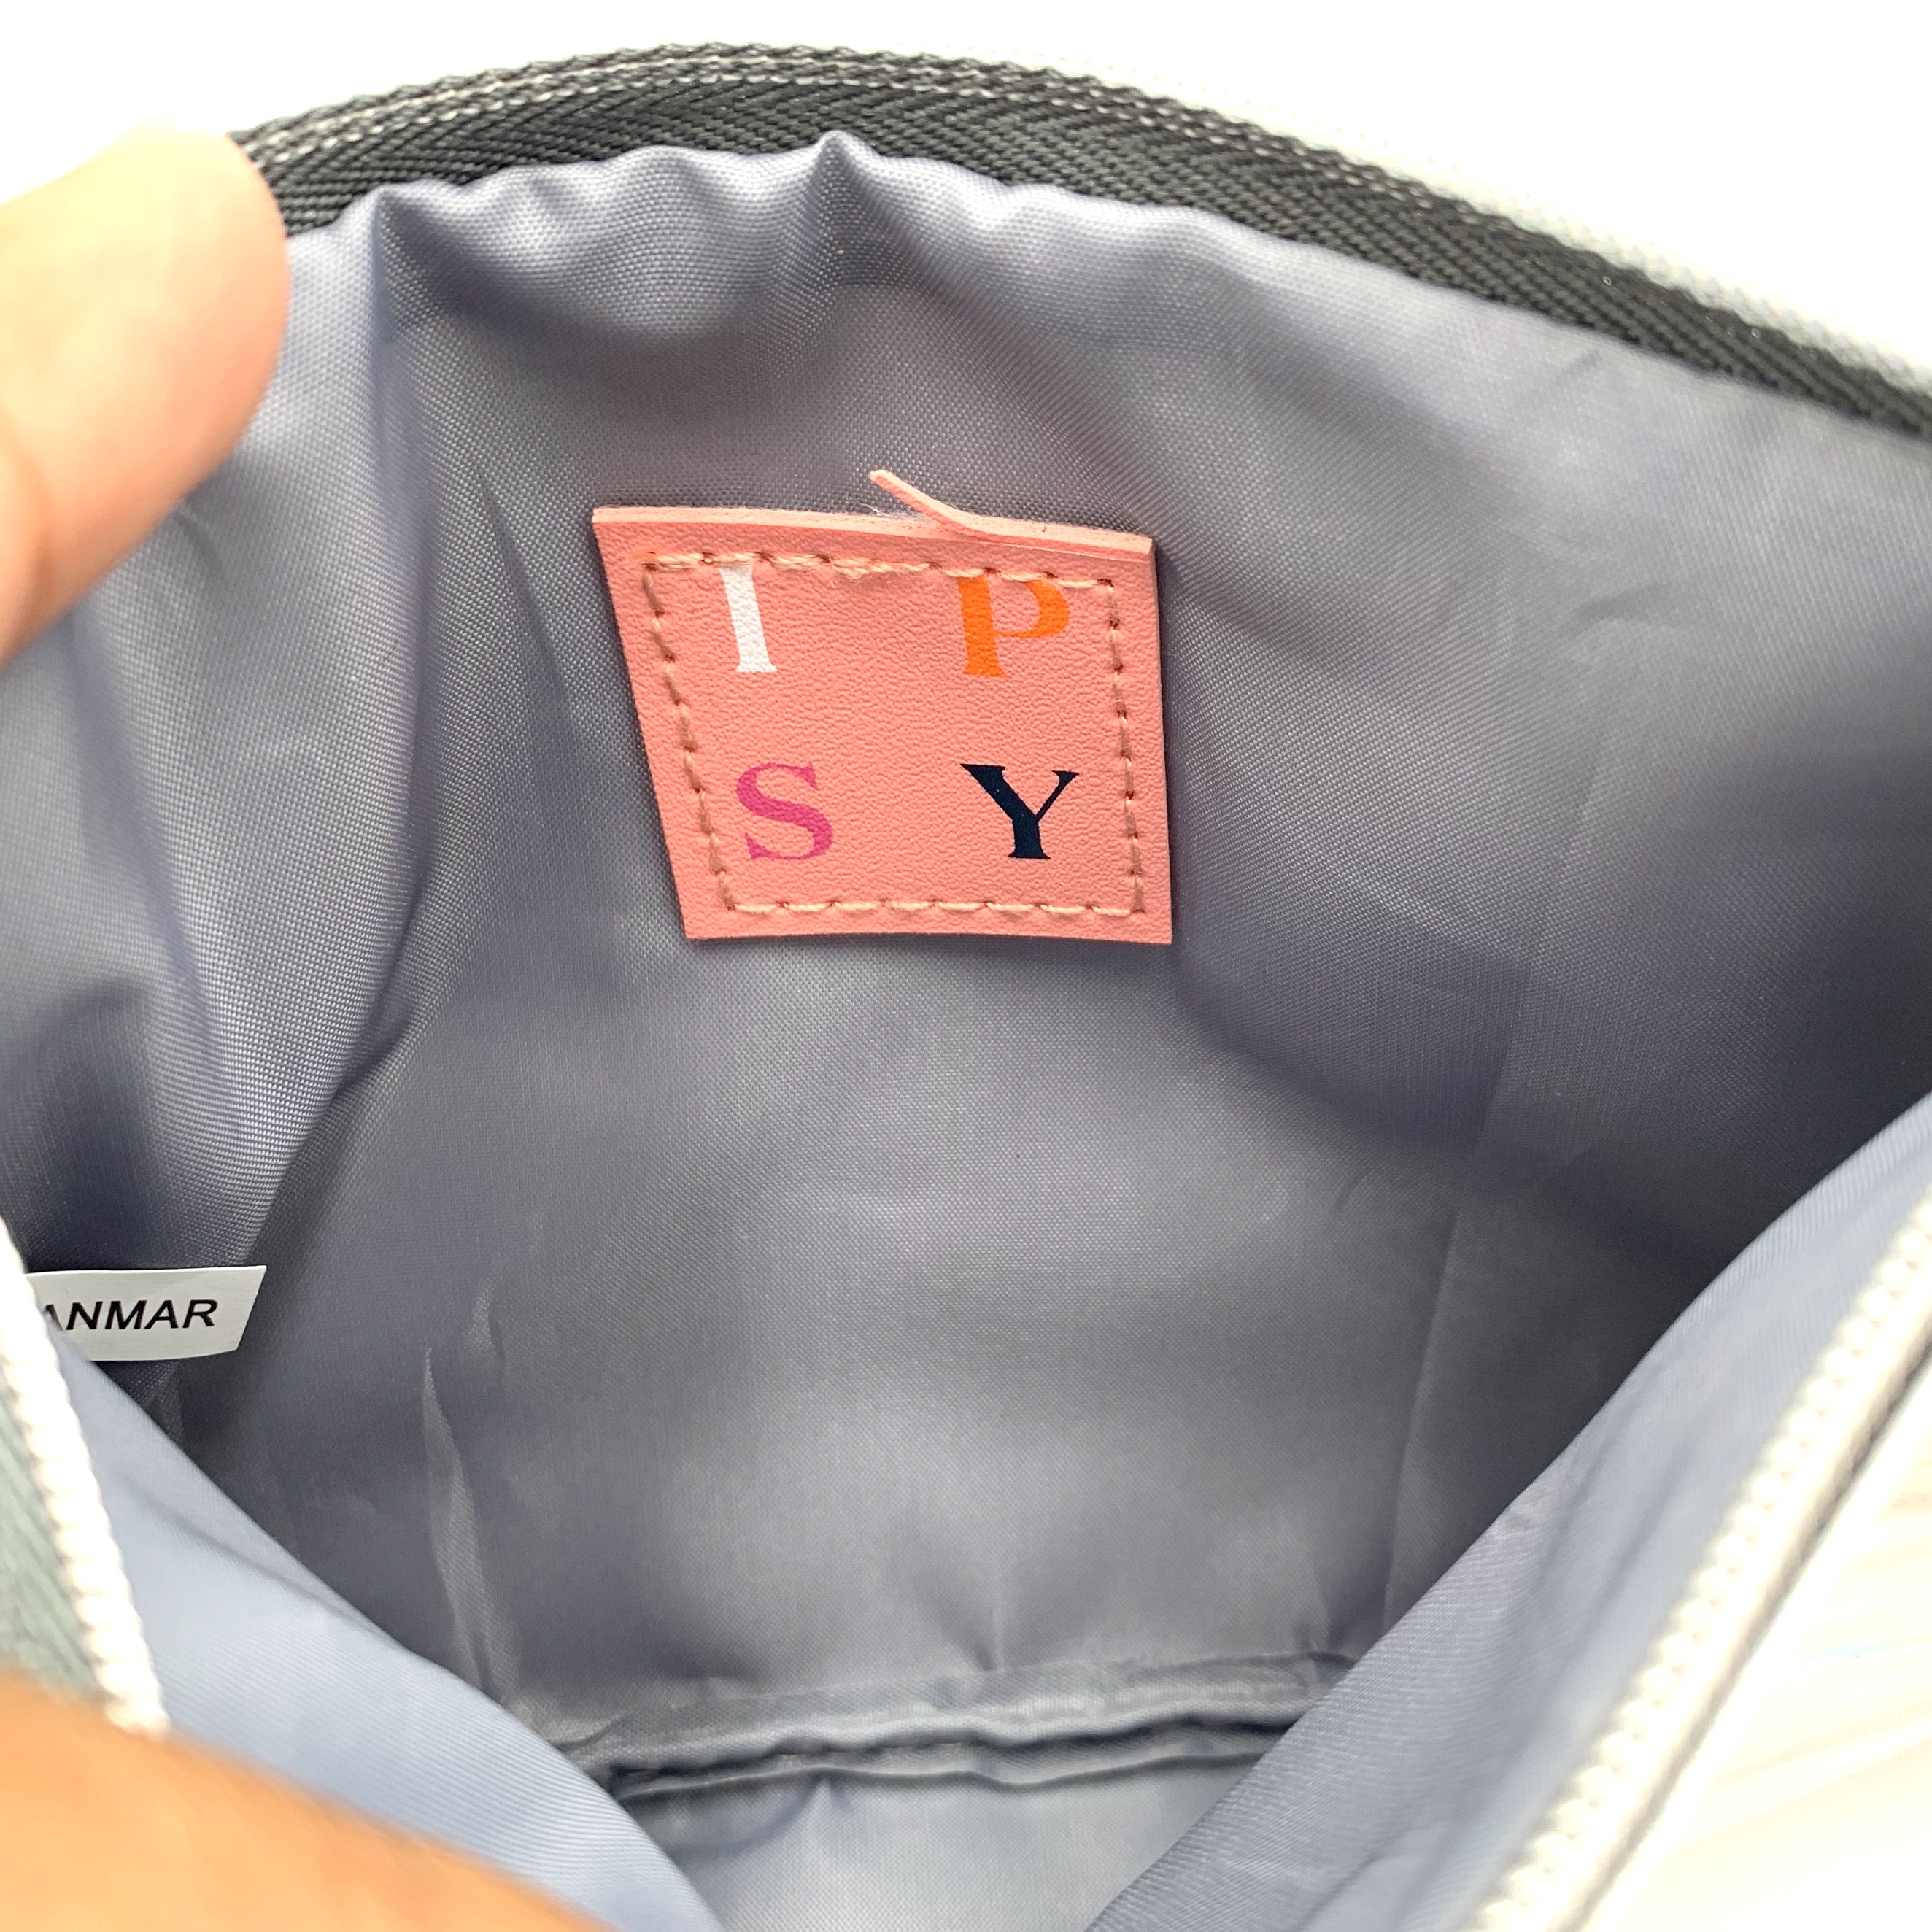 Bag Inside for Ipsy Glam Bag August 2020